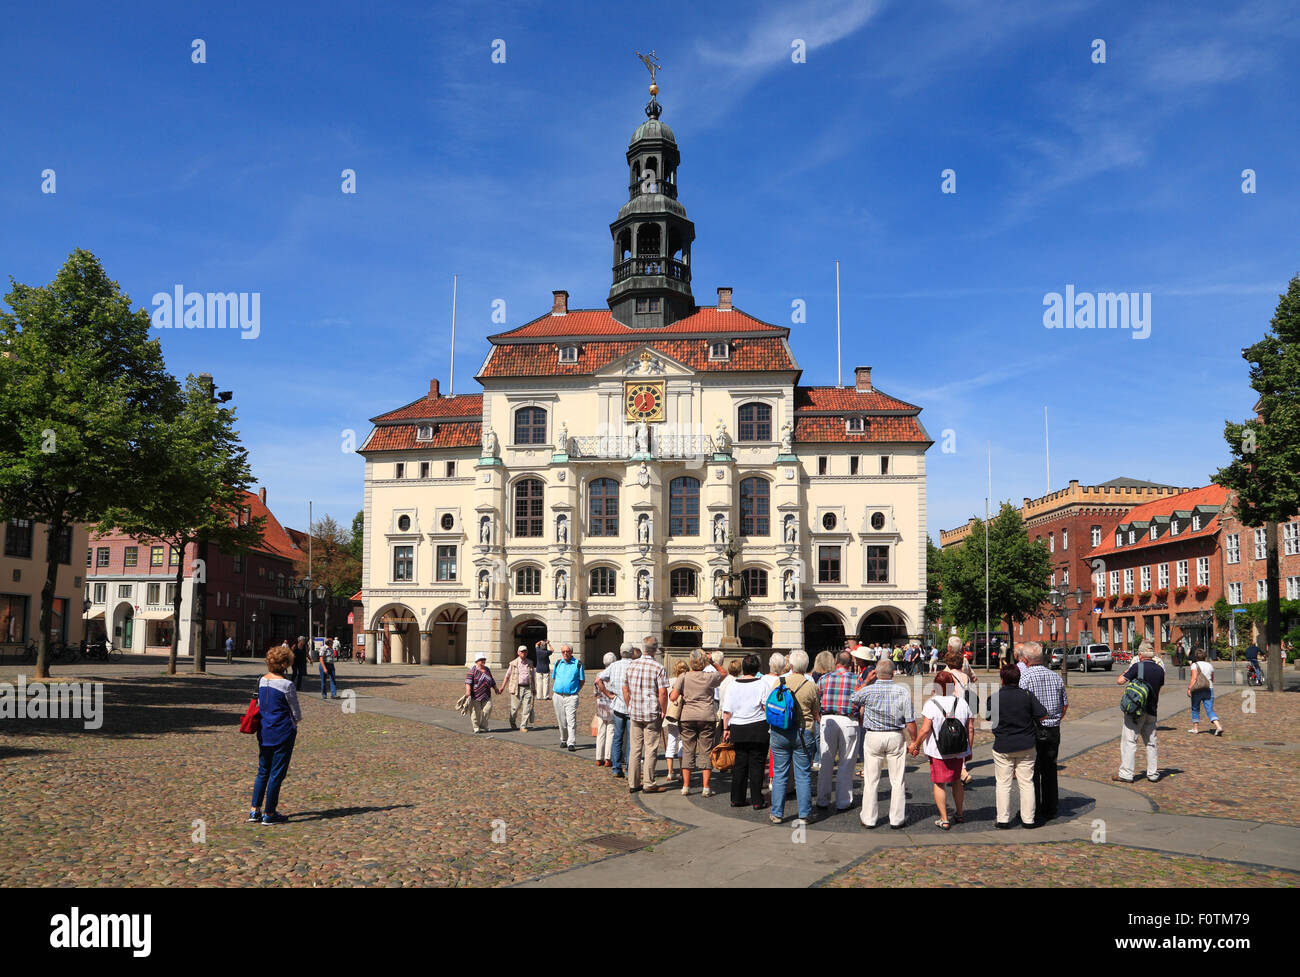 Geführte Stadtrundfahrt am Marktplatz vor dem Rathaus, Lüneburg, Lüneburg, Niedersachsen, Deutschland, Europa Stockfoto